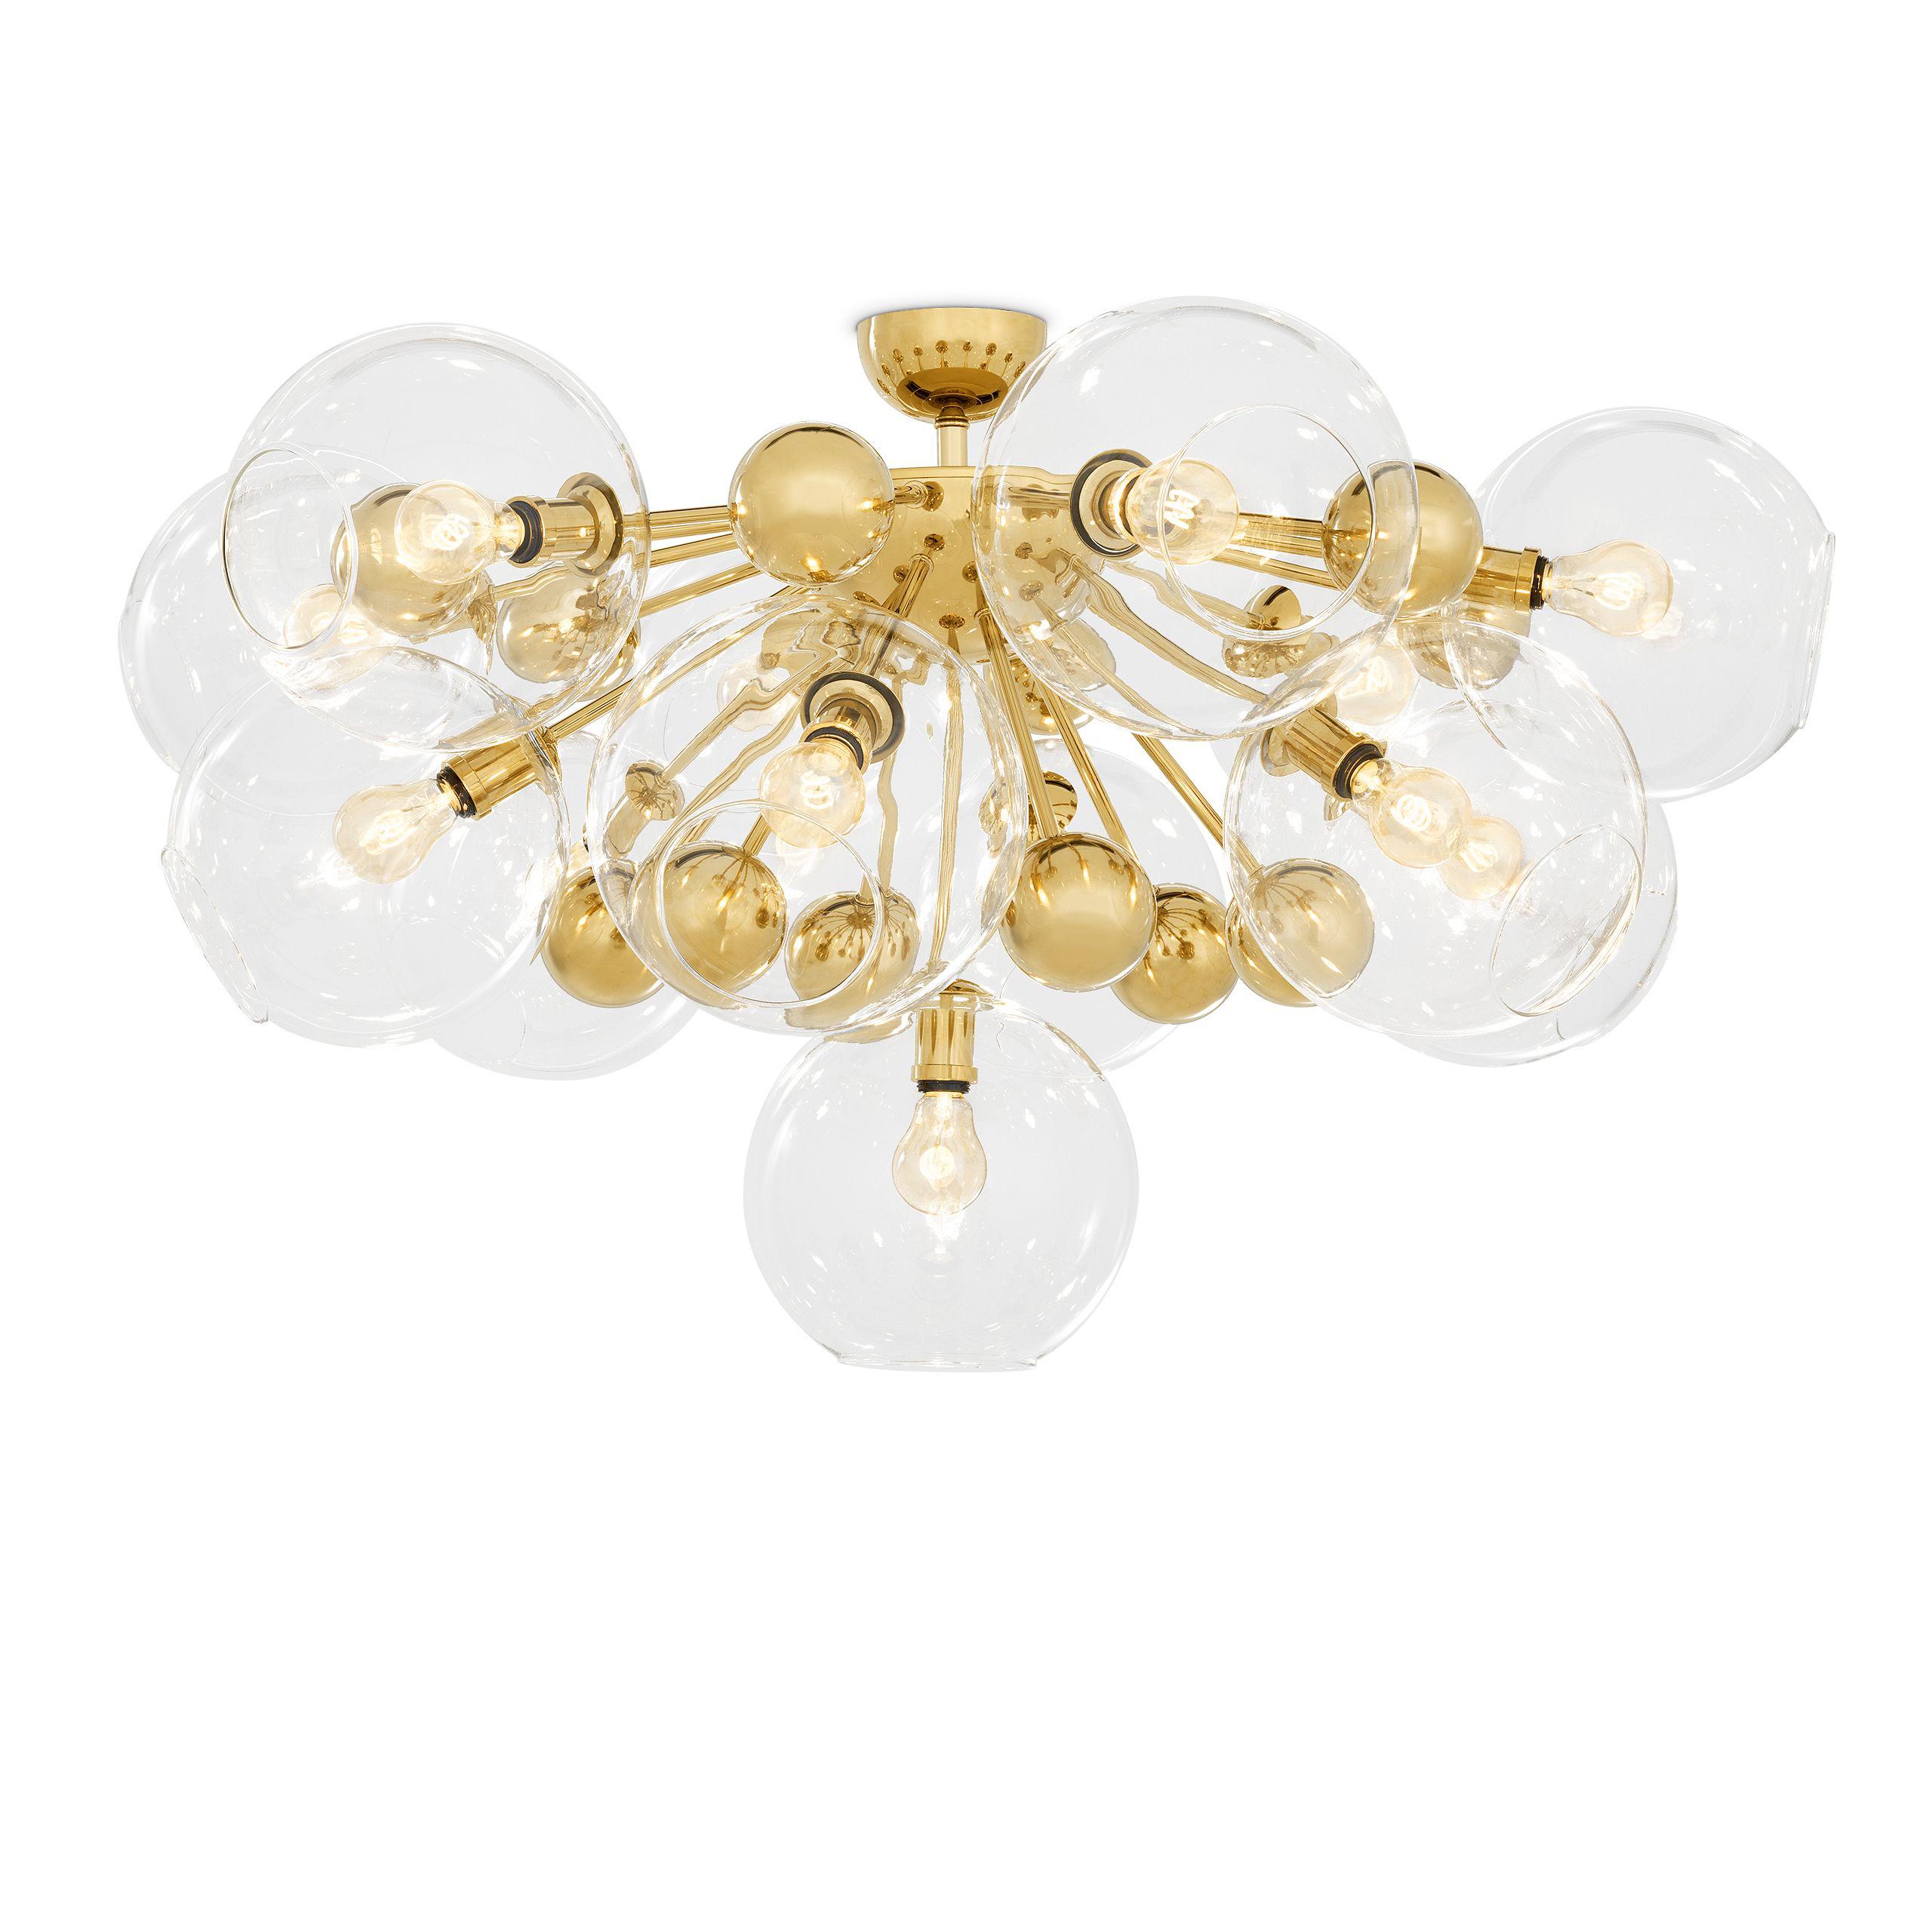 Купить Накладной светильник Ceiling Lamp Soleil в интернет-магазине roooms.ru